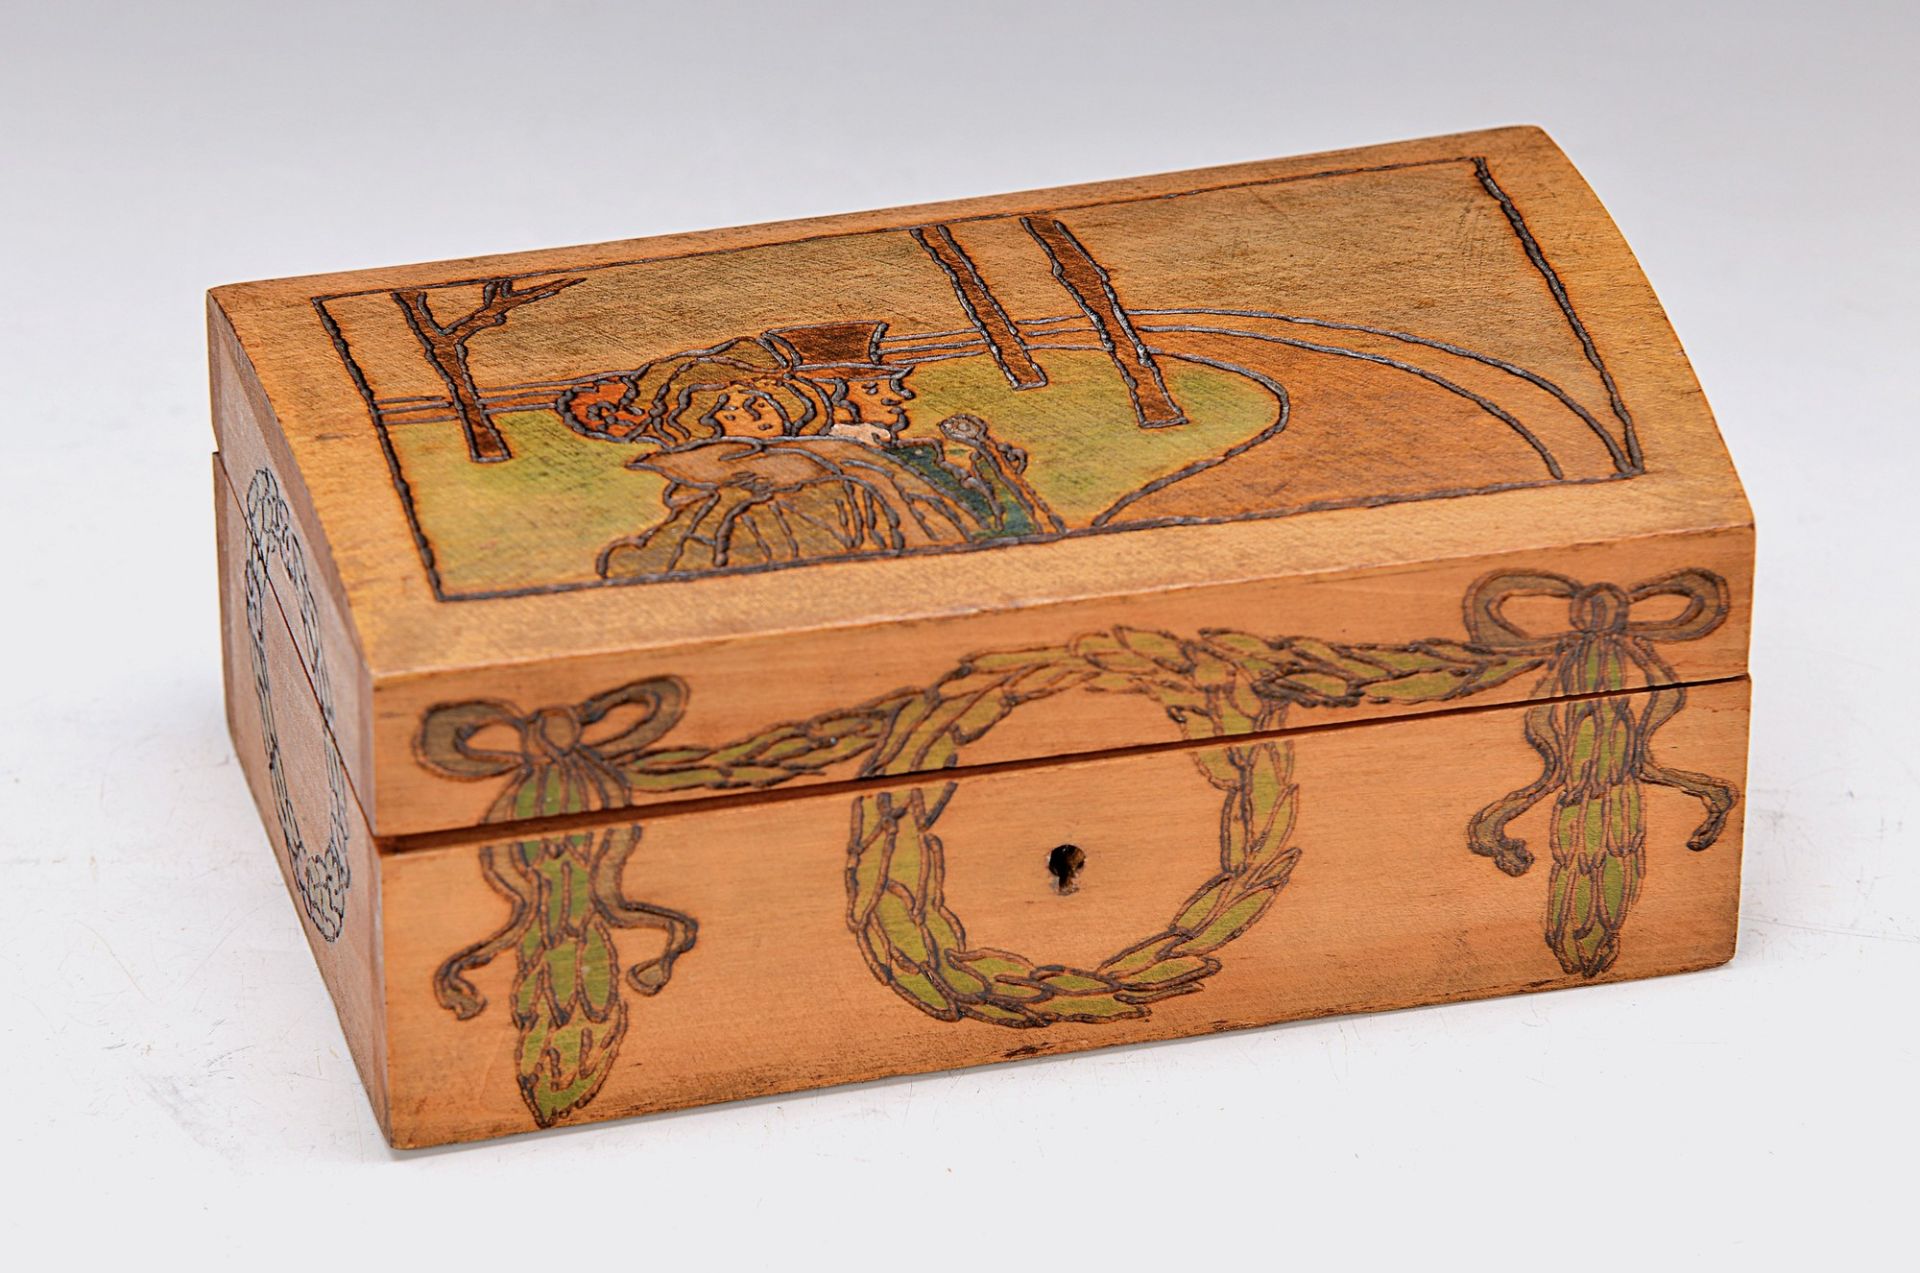 small wooden box, J. H. Vogeler, Worpsweder Werkstätten, around 1910, colorful abstract poker